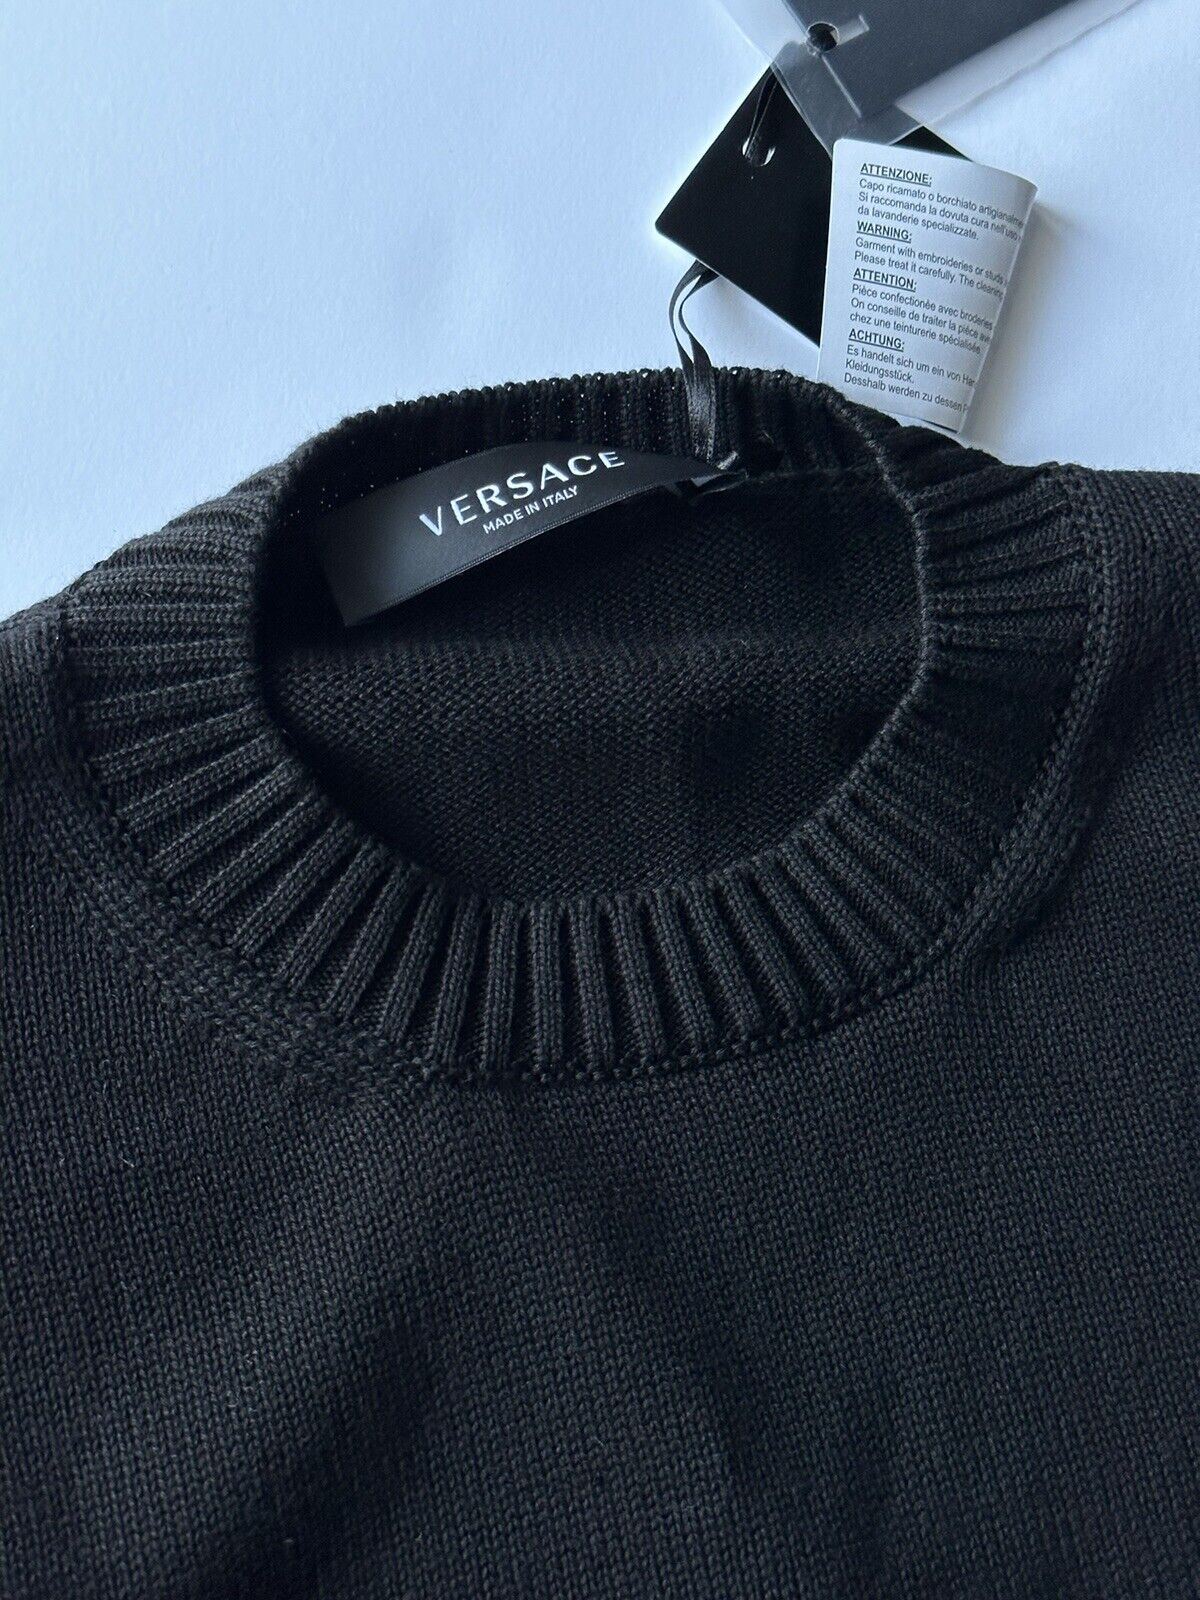 NWT $700 Versace Signature Хлопковый вязаный свитер, черный 50 (большой), Италия A85006